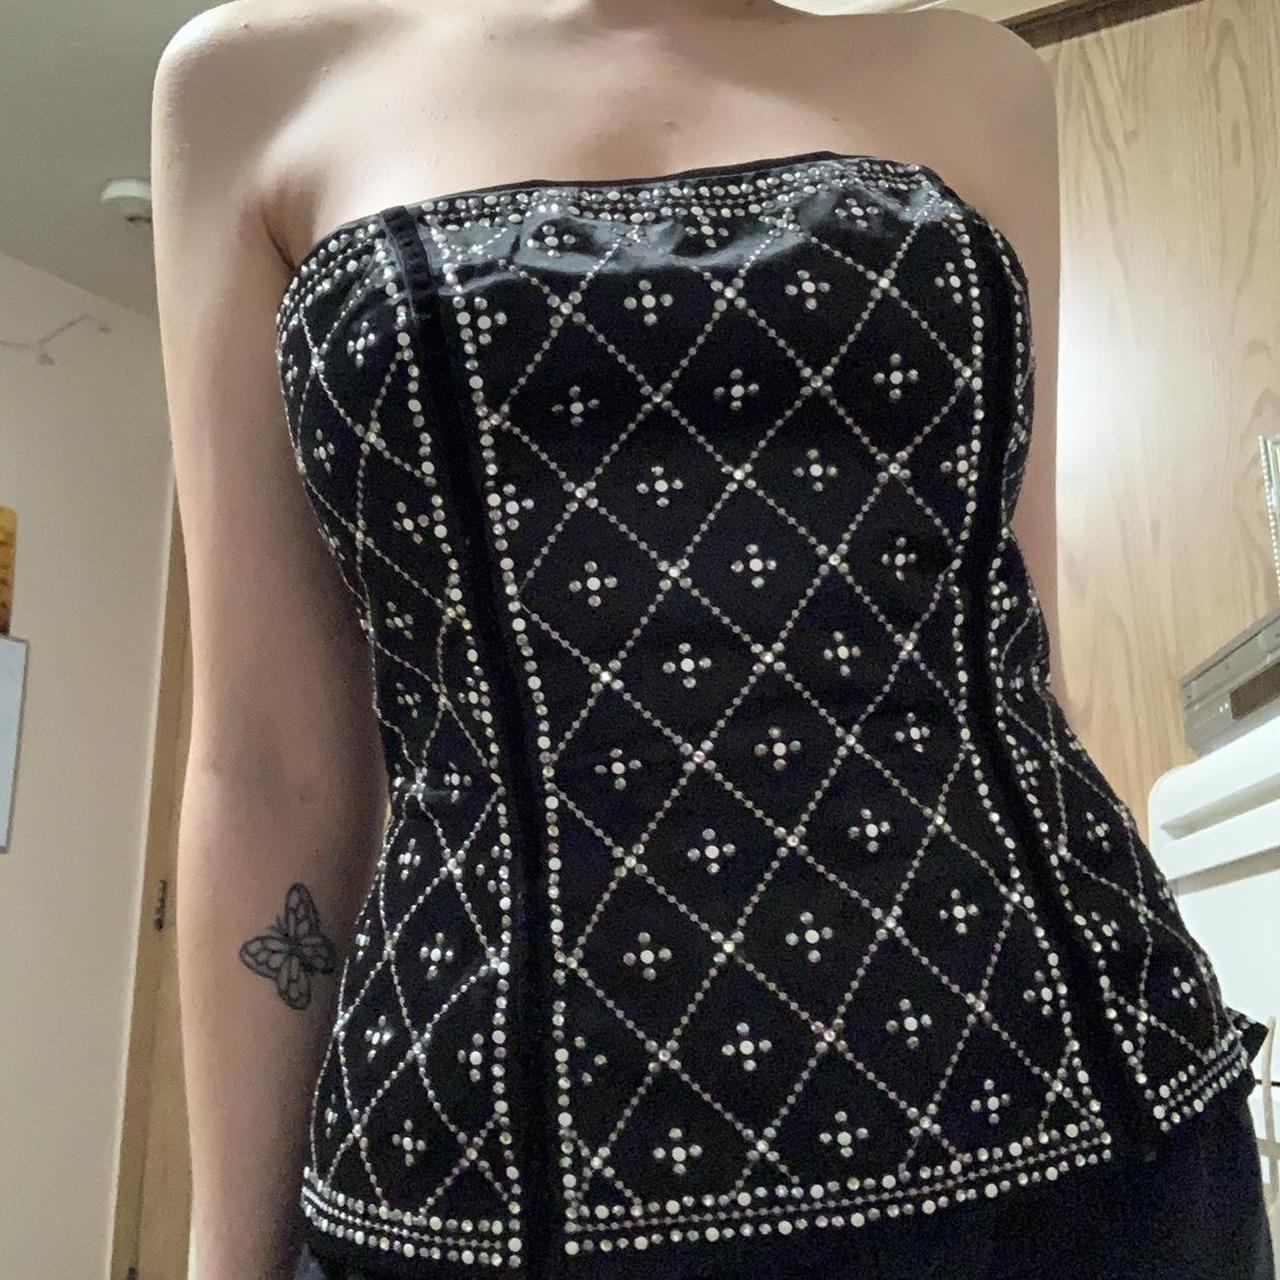 Beaded black corset 🖤 brand: white house black - Depop